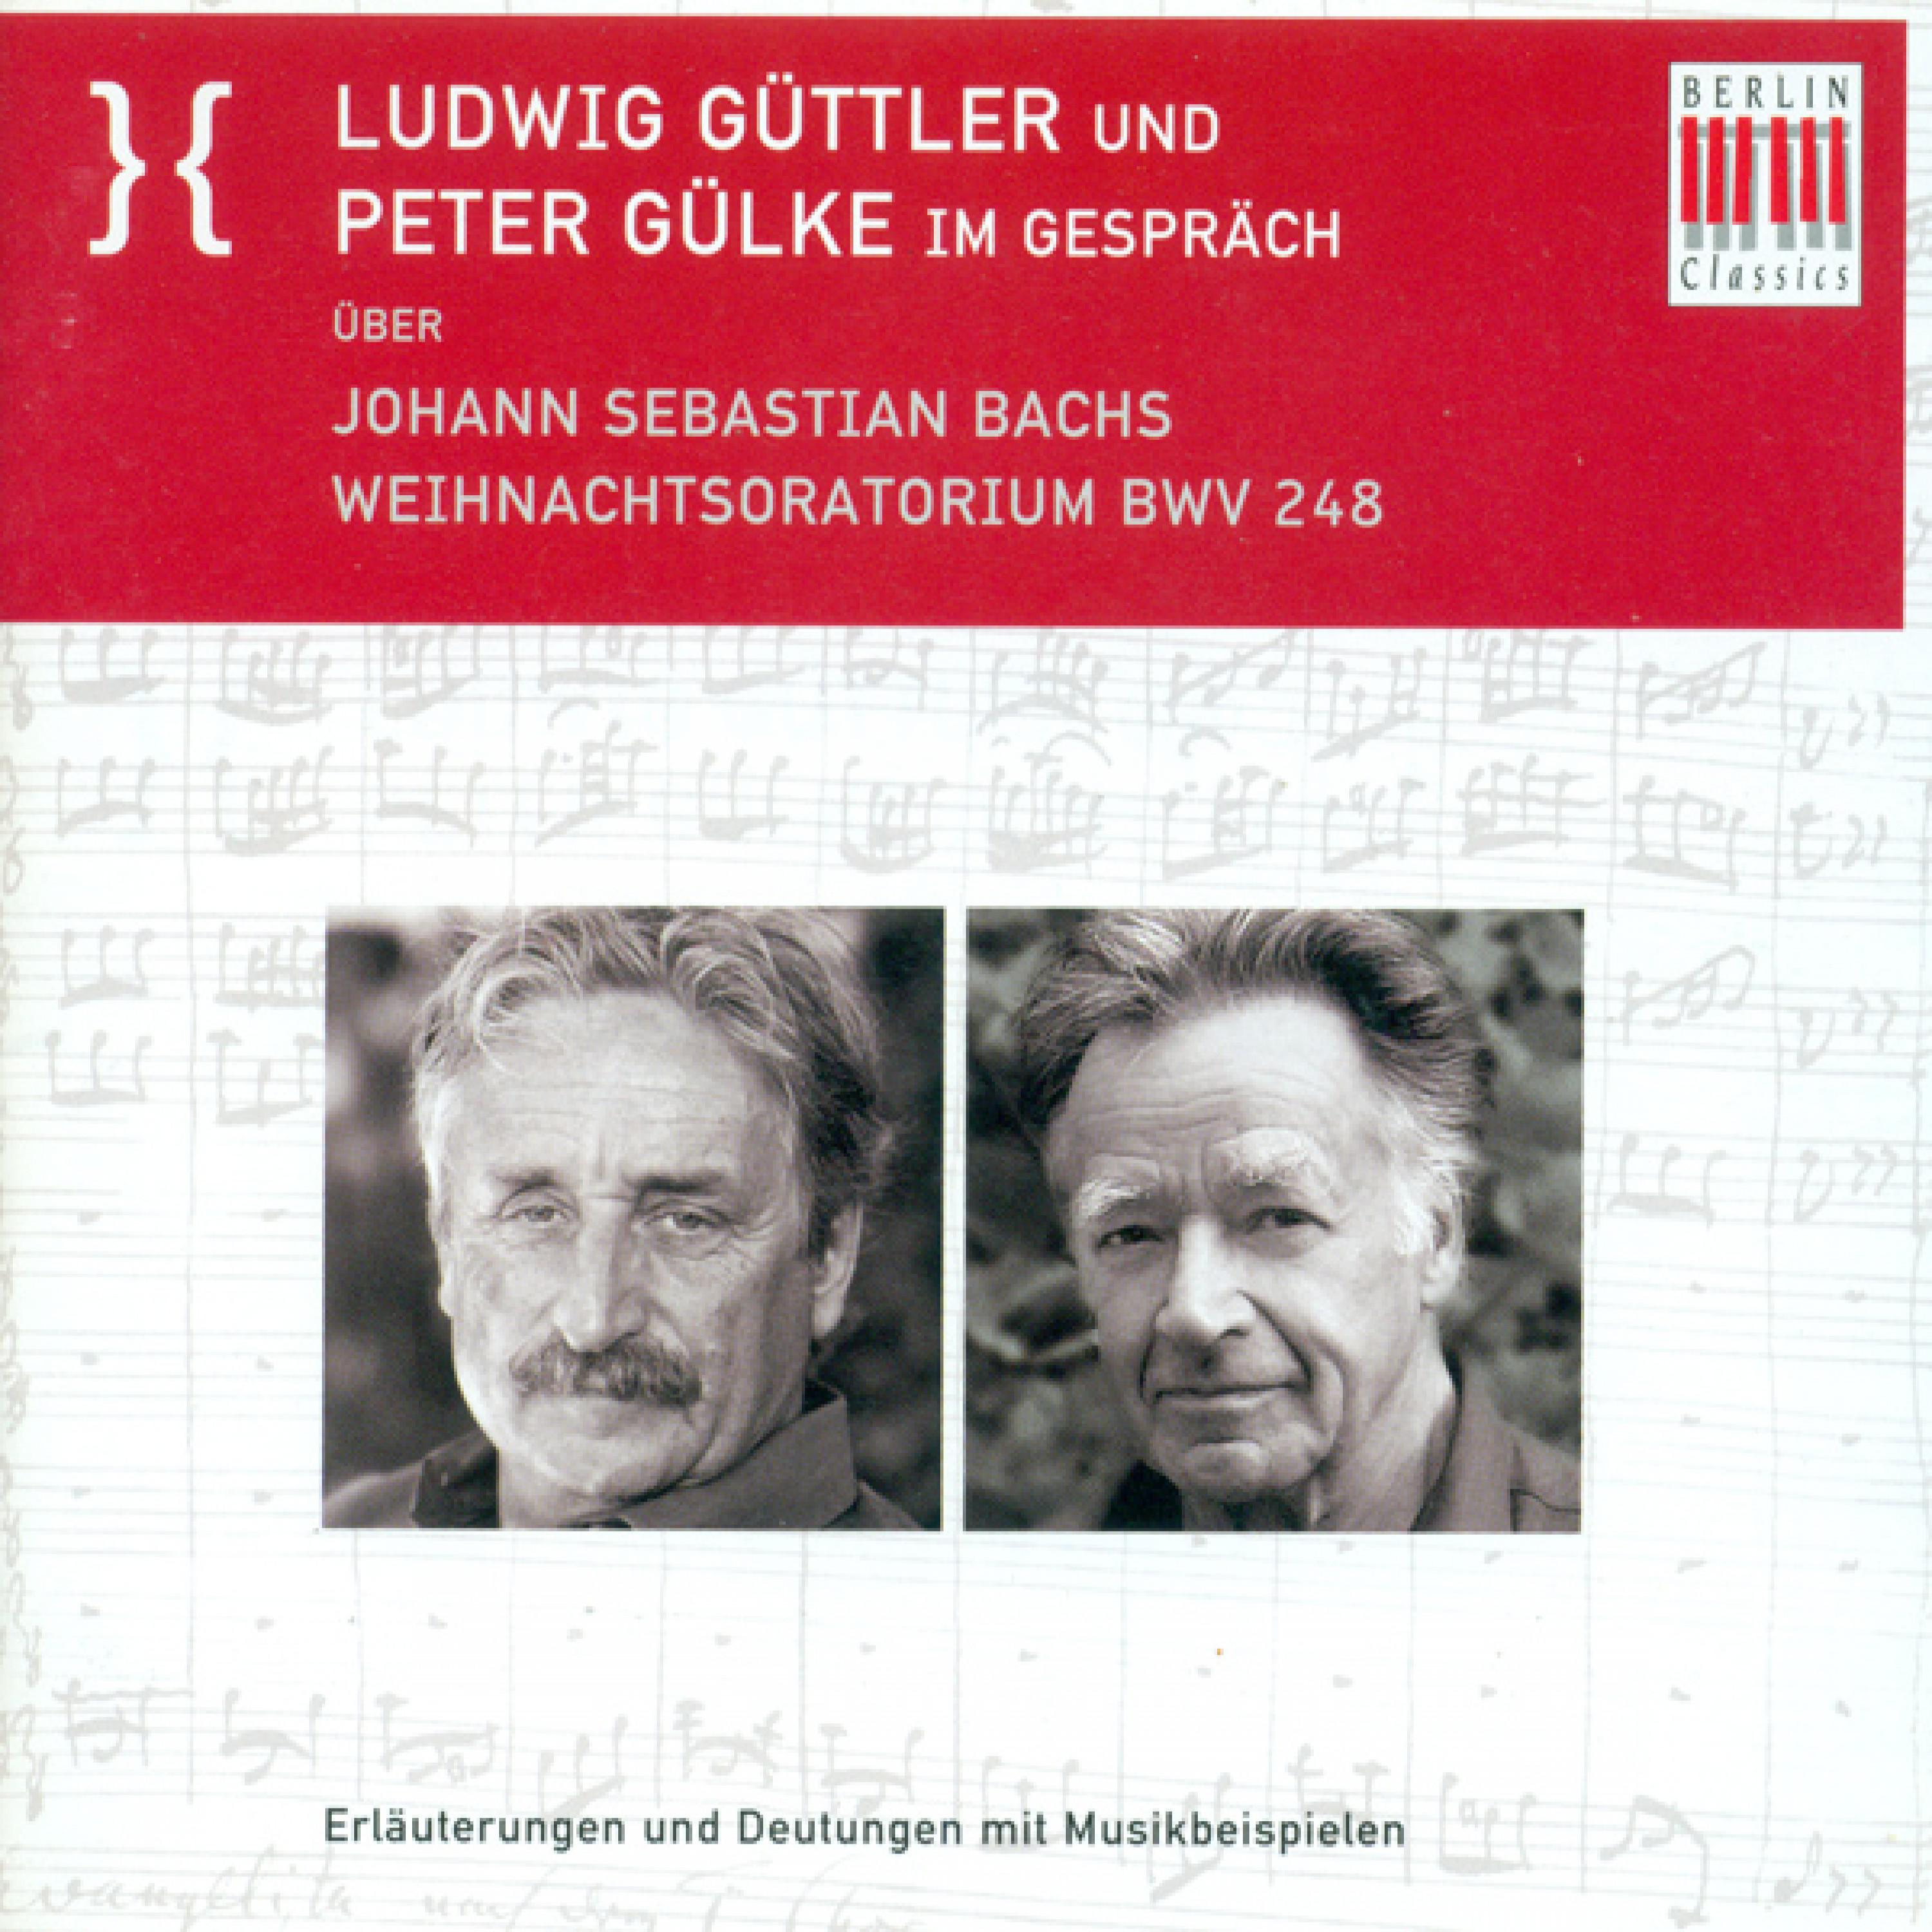 Ludwig Guttler und Peter Gulke Im Gesprach uber Johann Sebastian Bach's Weihnachtsoratorium BWV 248: Die Symbolik am Beispiel der 2. Kantate